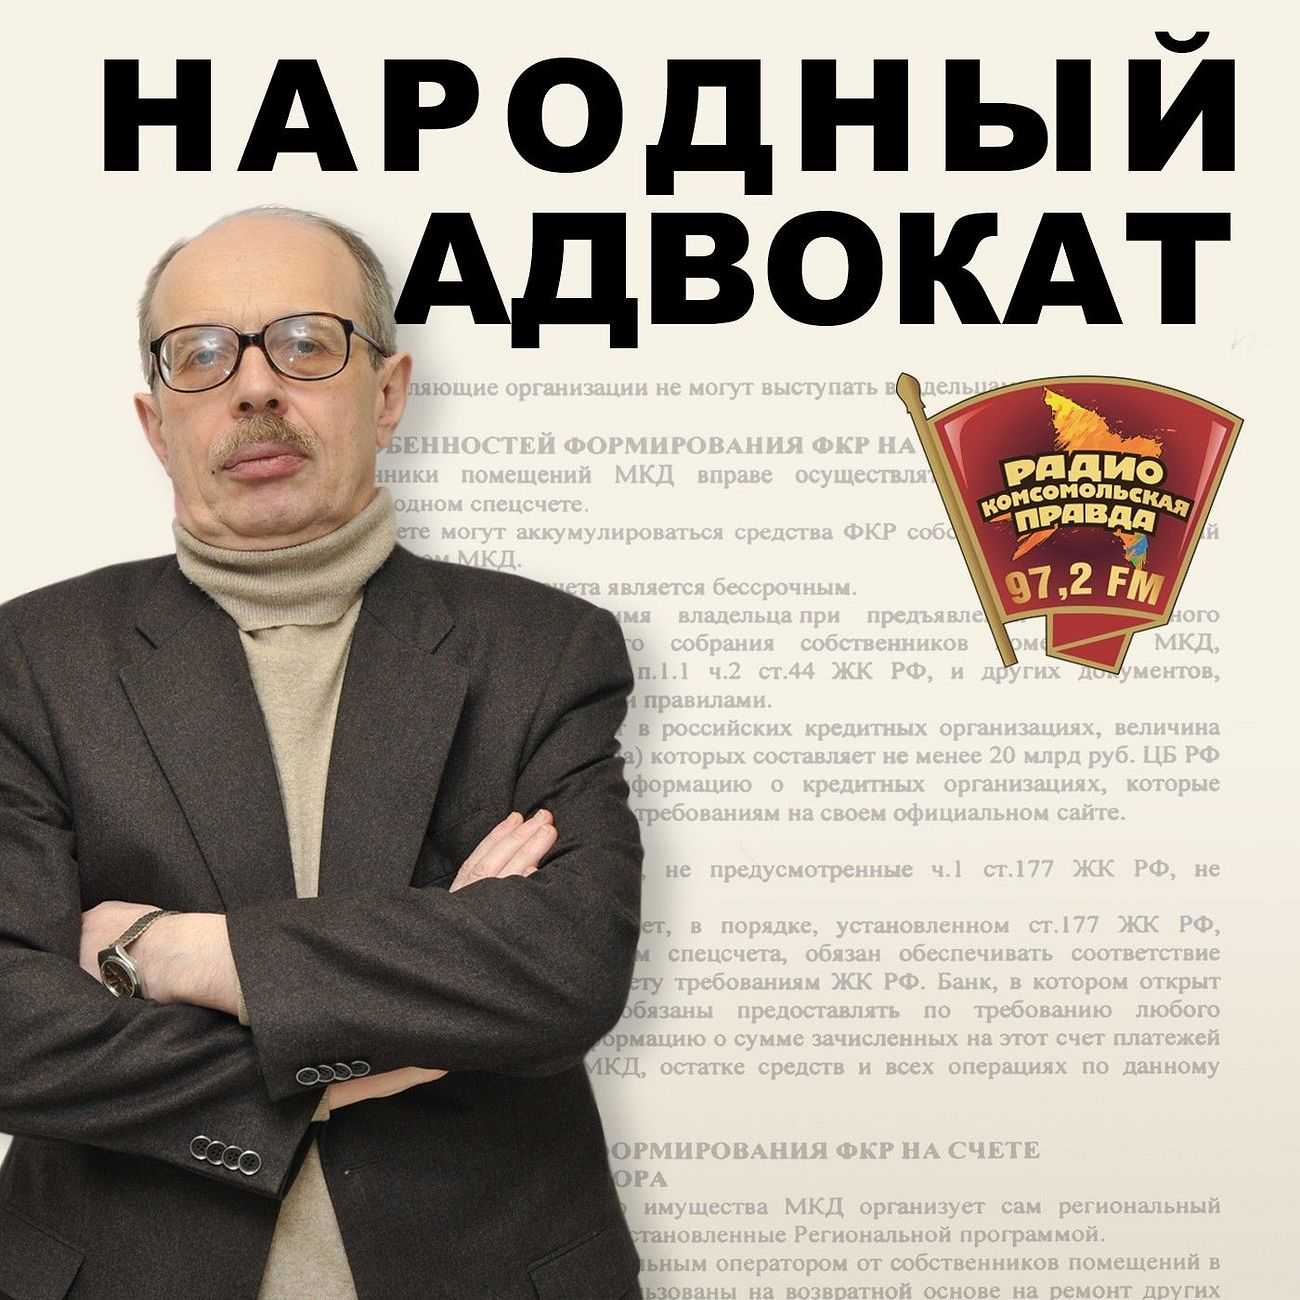 Народный адвокат Леонид Ольшанский